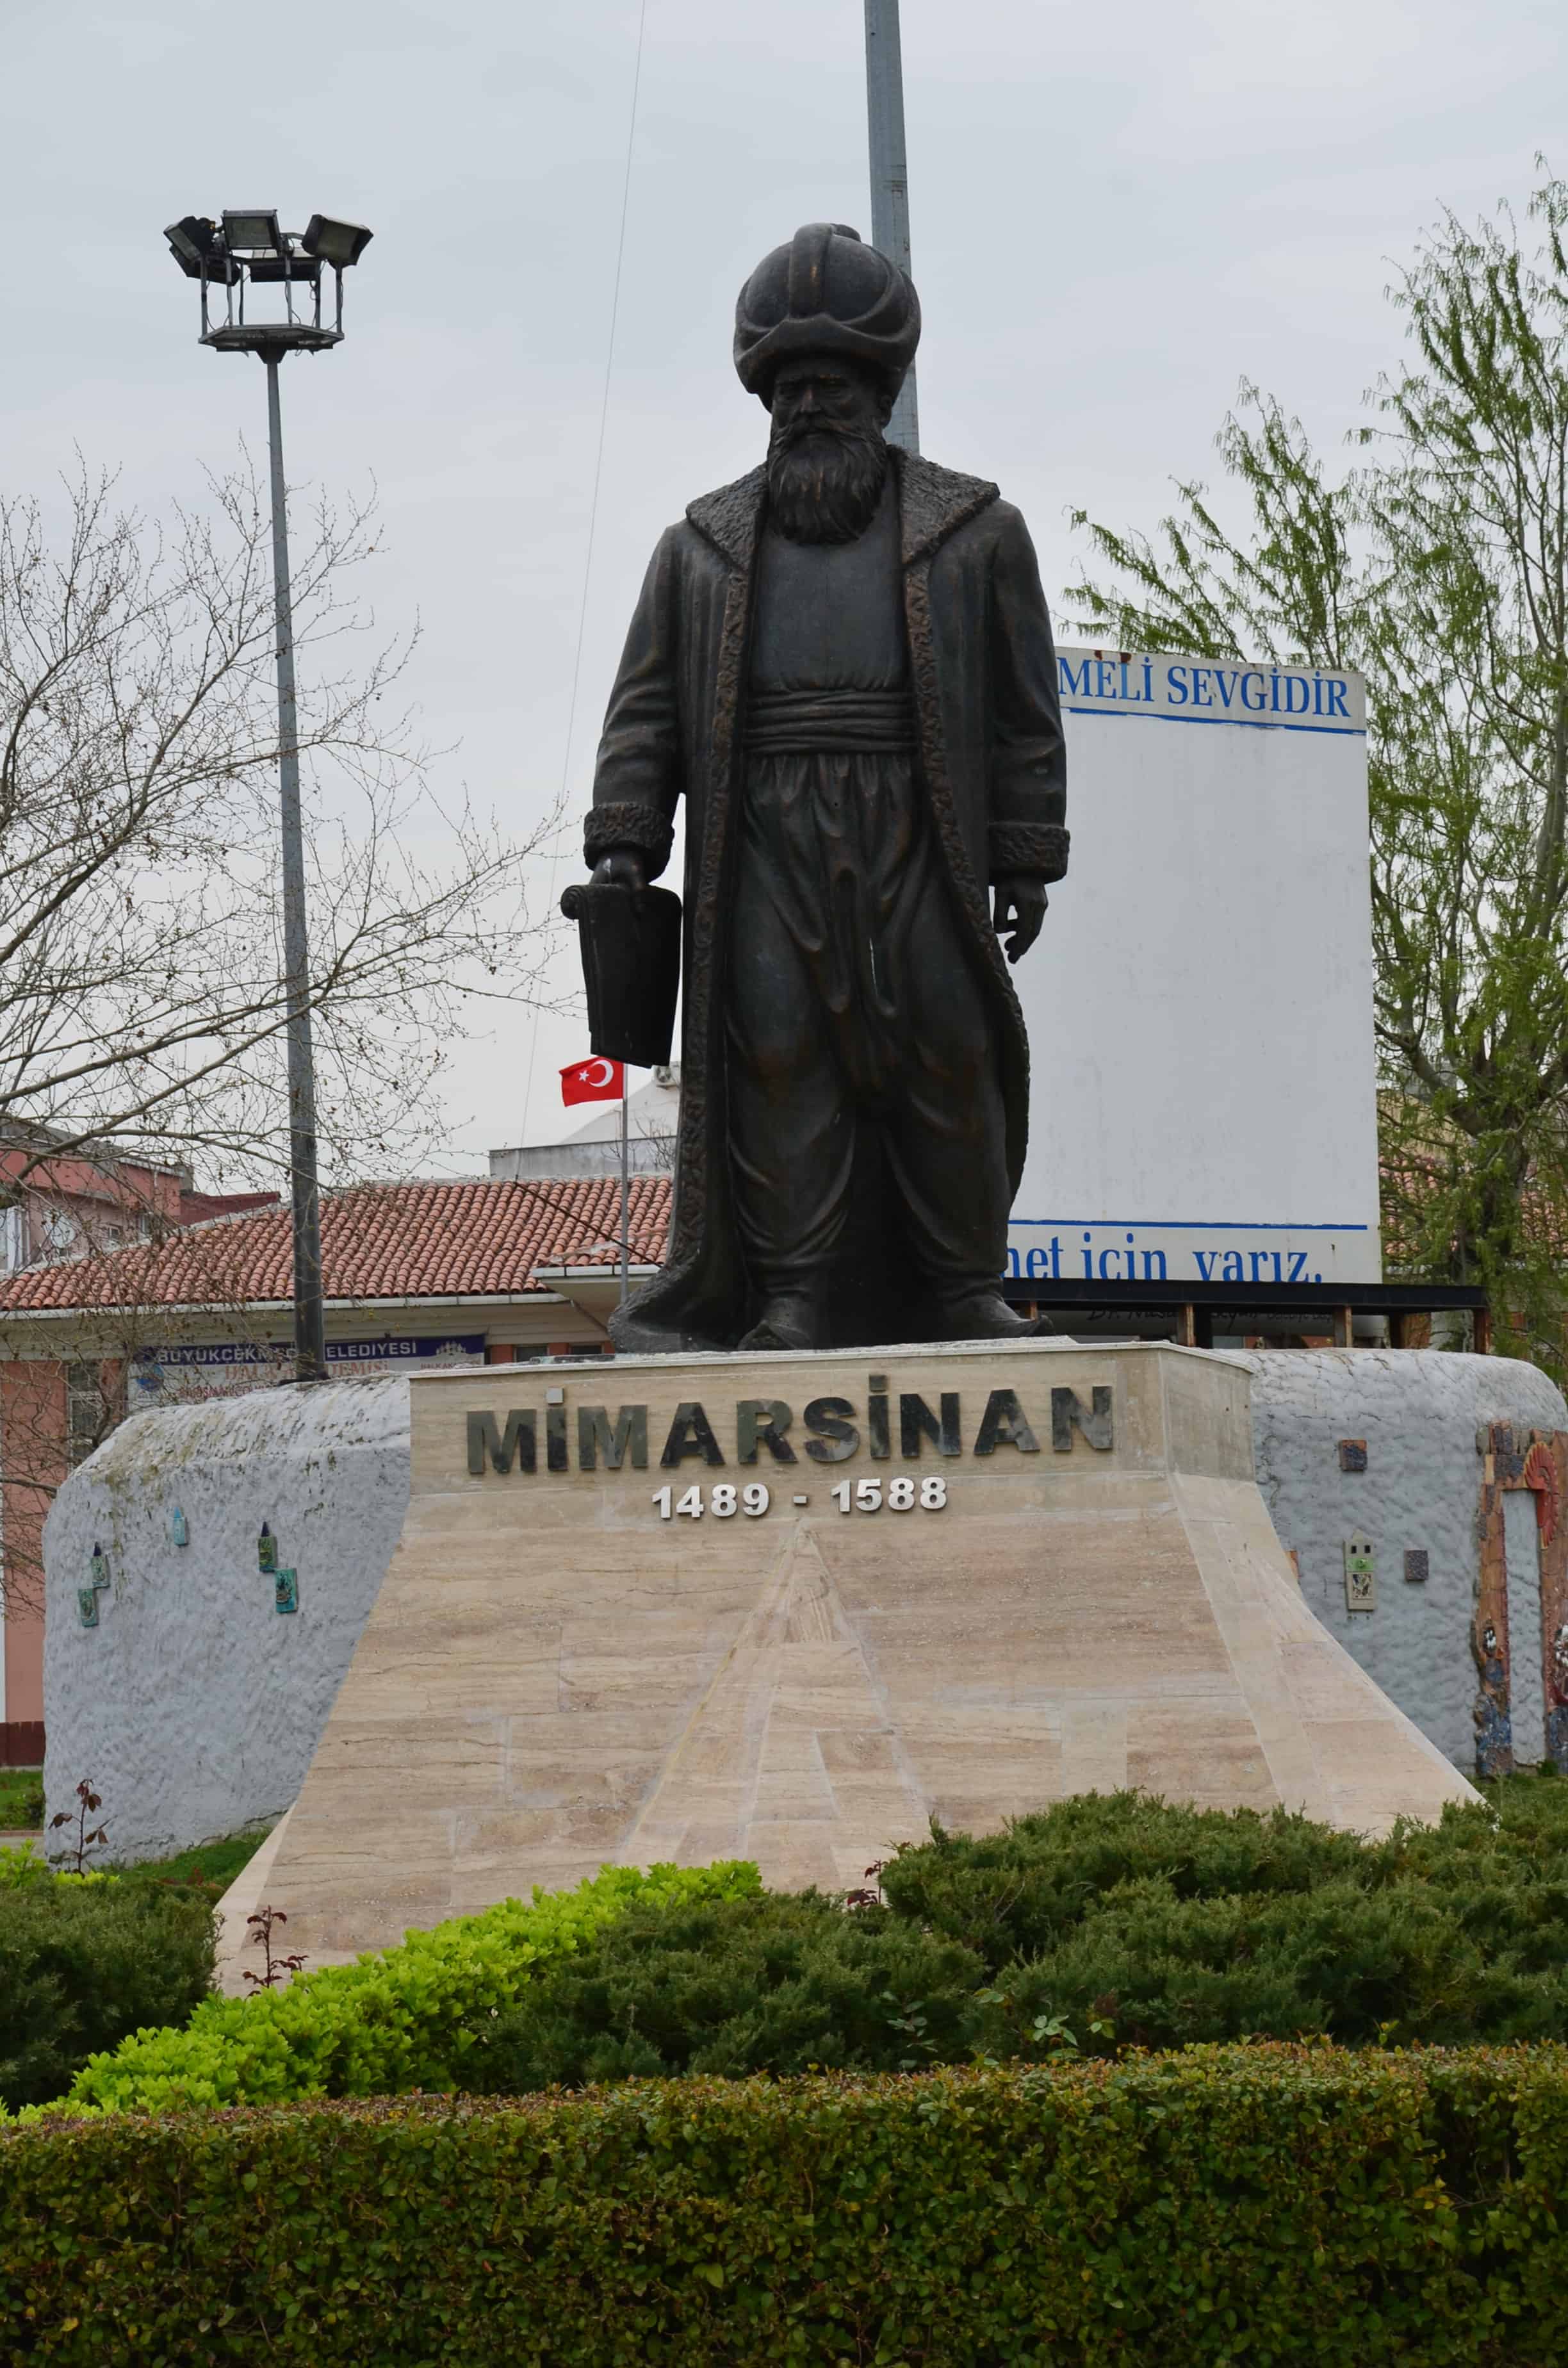 Mimar Sinan statue in Büyükçekmece, Istanbul, Turkey